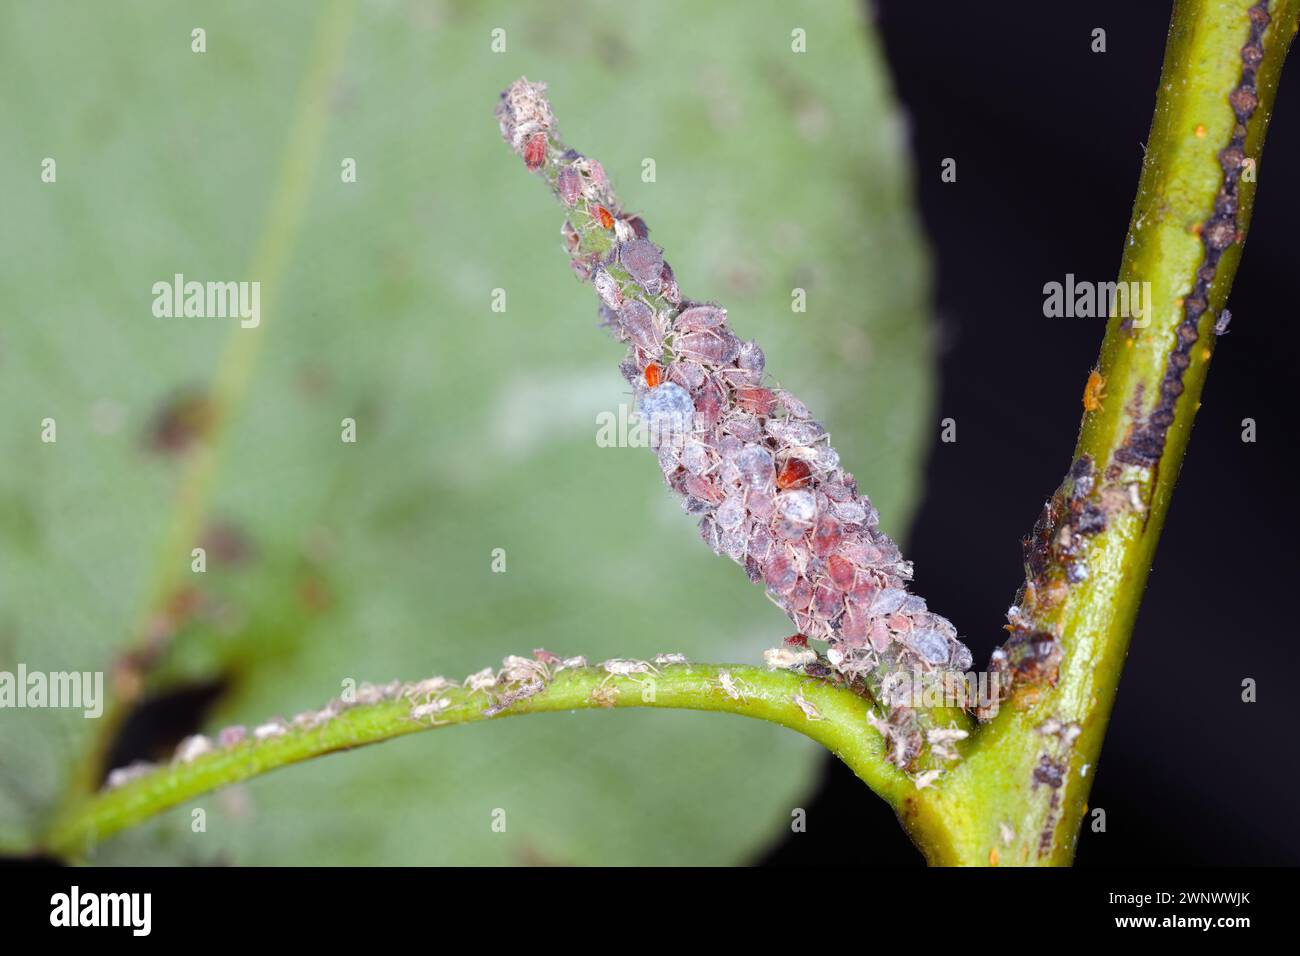 Birnengras-Blattlaus (Melanaphis pyraria) und Birnenpsychologie, Europäischer Birnensauger (Cacopsylla pyri). Eine Kolonie flügelloser Insekten auf Birnenblatt und Triebe. Stockfoto